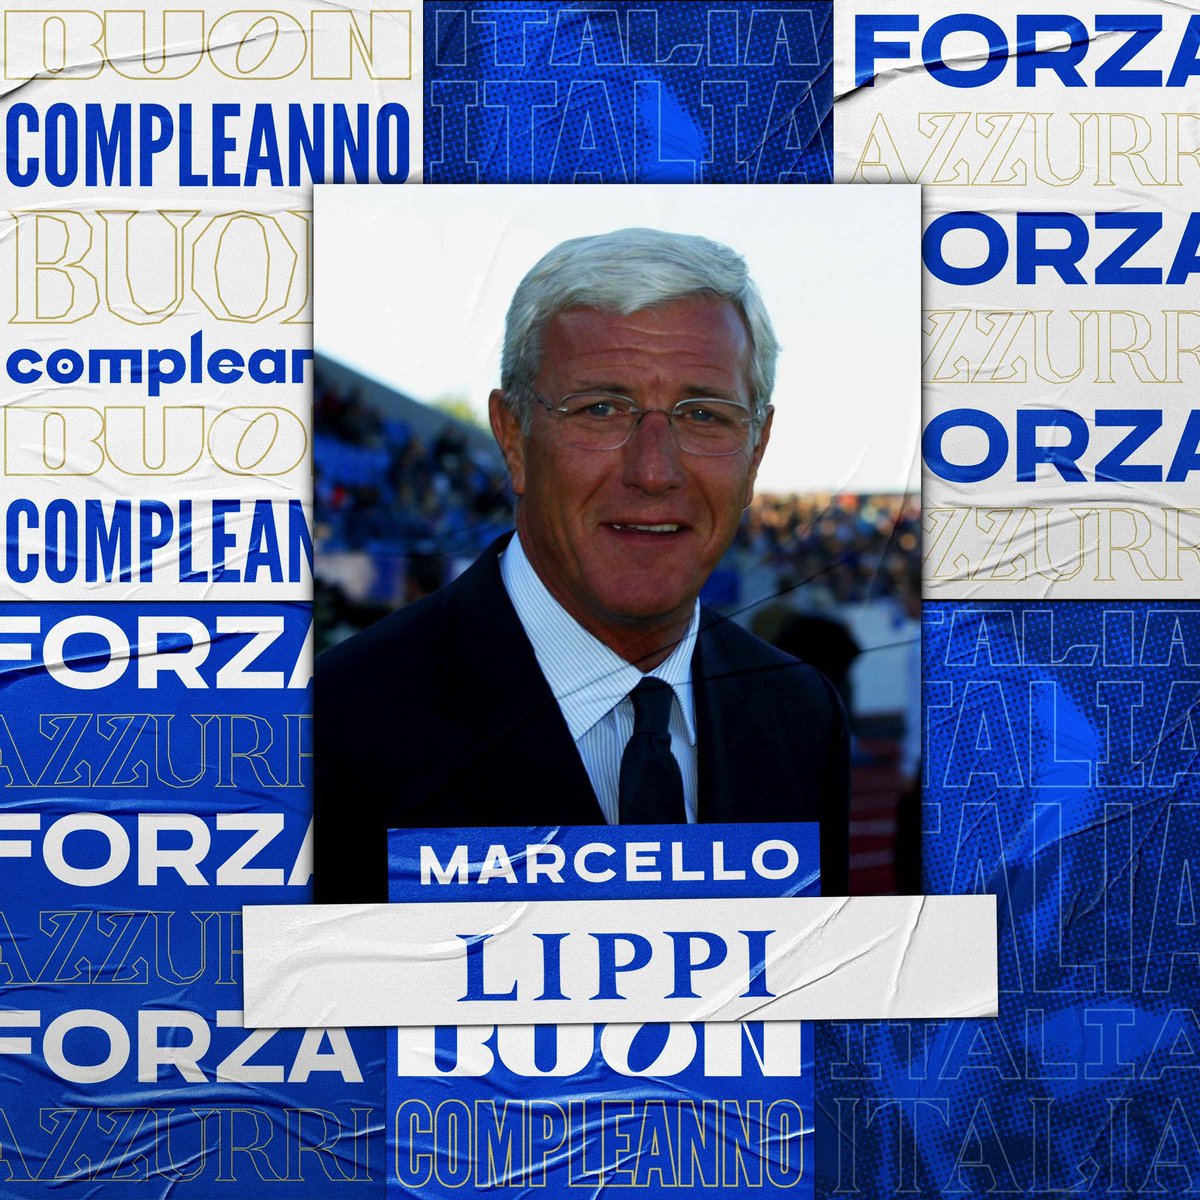 🎂 Buon compleanno a Marcello #Lippi che compie 7️⃣6️⃣ anni! 🇮🇹 56 panchine in #Nazionale 🏆 Campione del Mondo 2006 ✨ #HallofFame del Calcio Italiano #Nazionale #Azzurri #VivoAzzurro